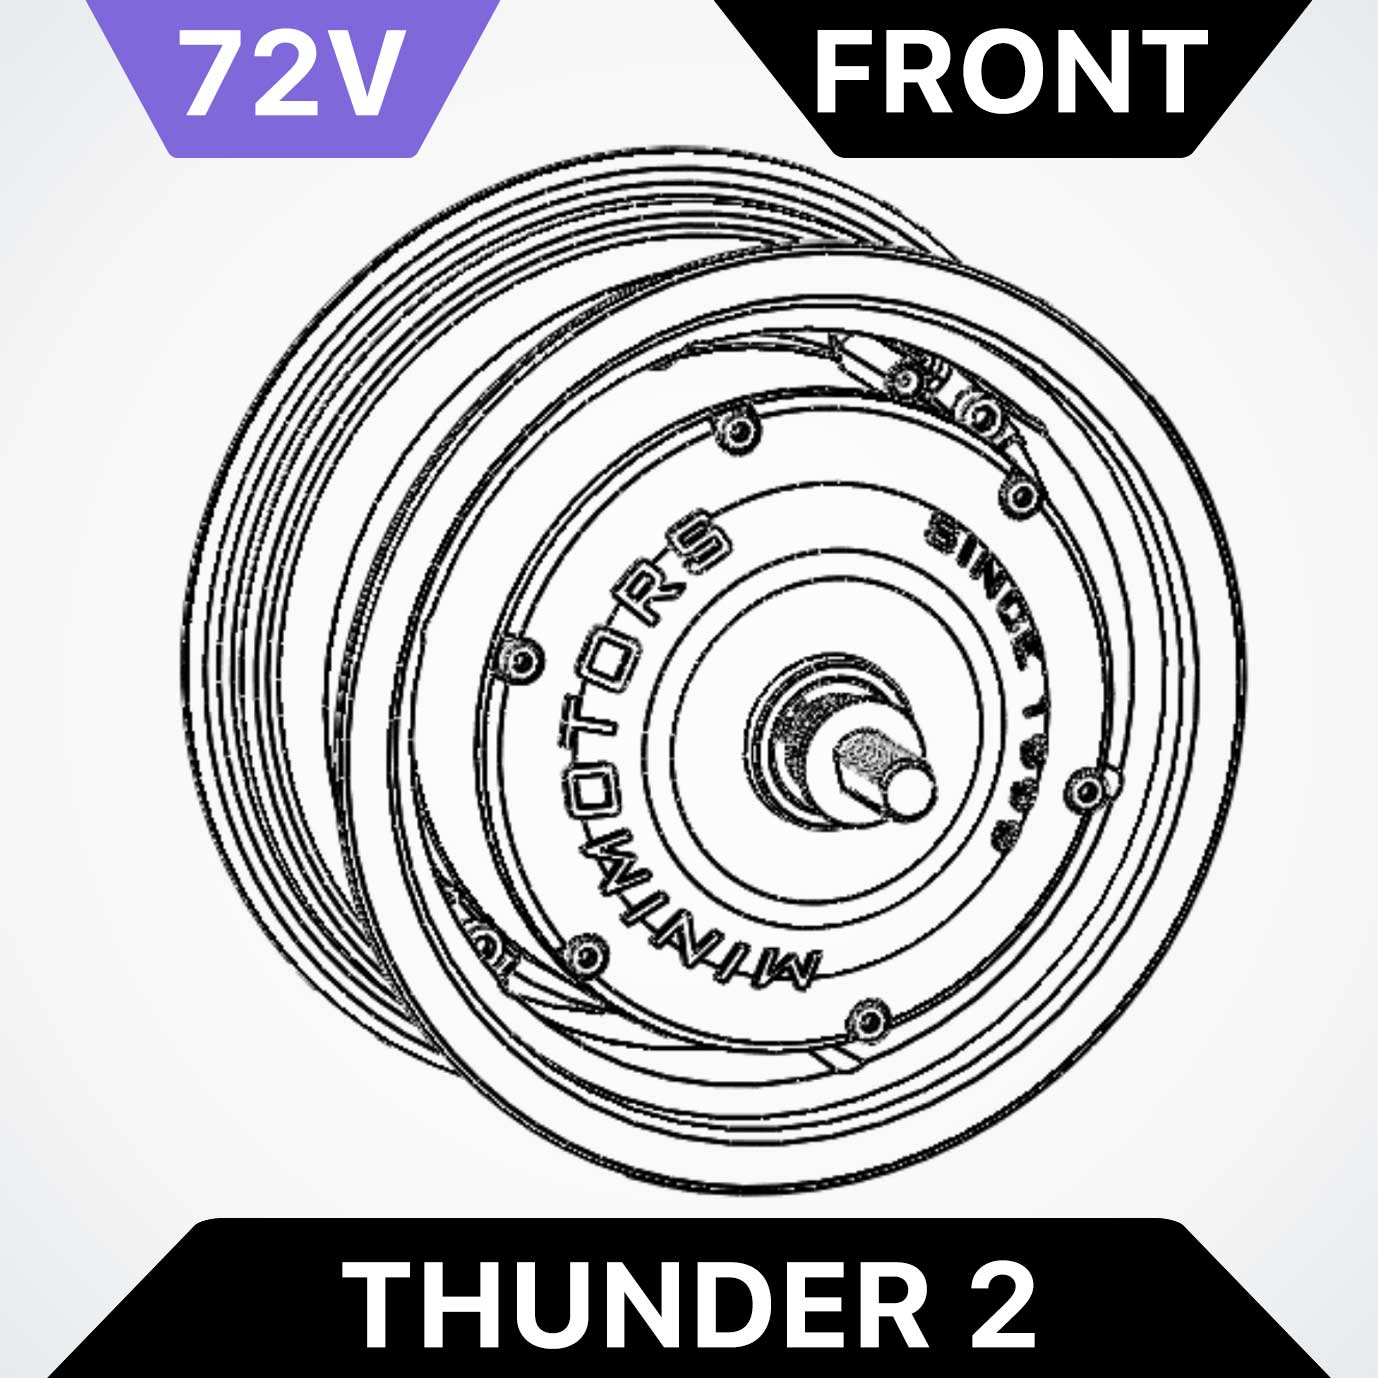 Front Motor for Dualtron Thunder 2 - 72V